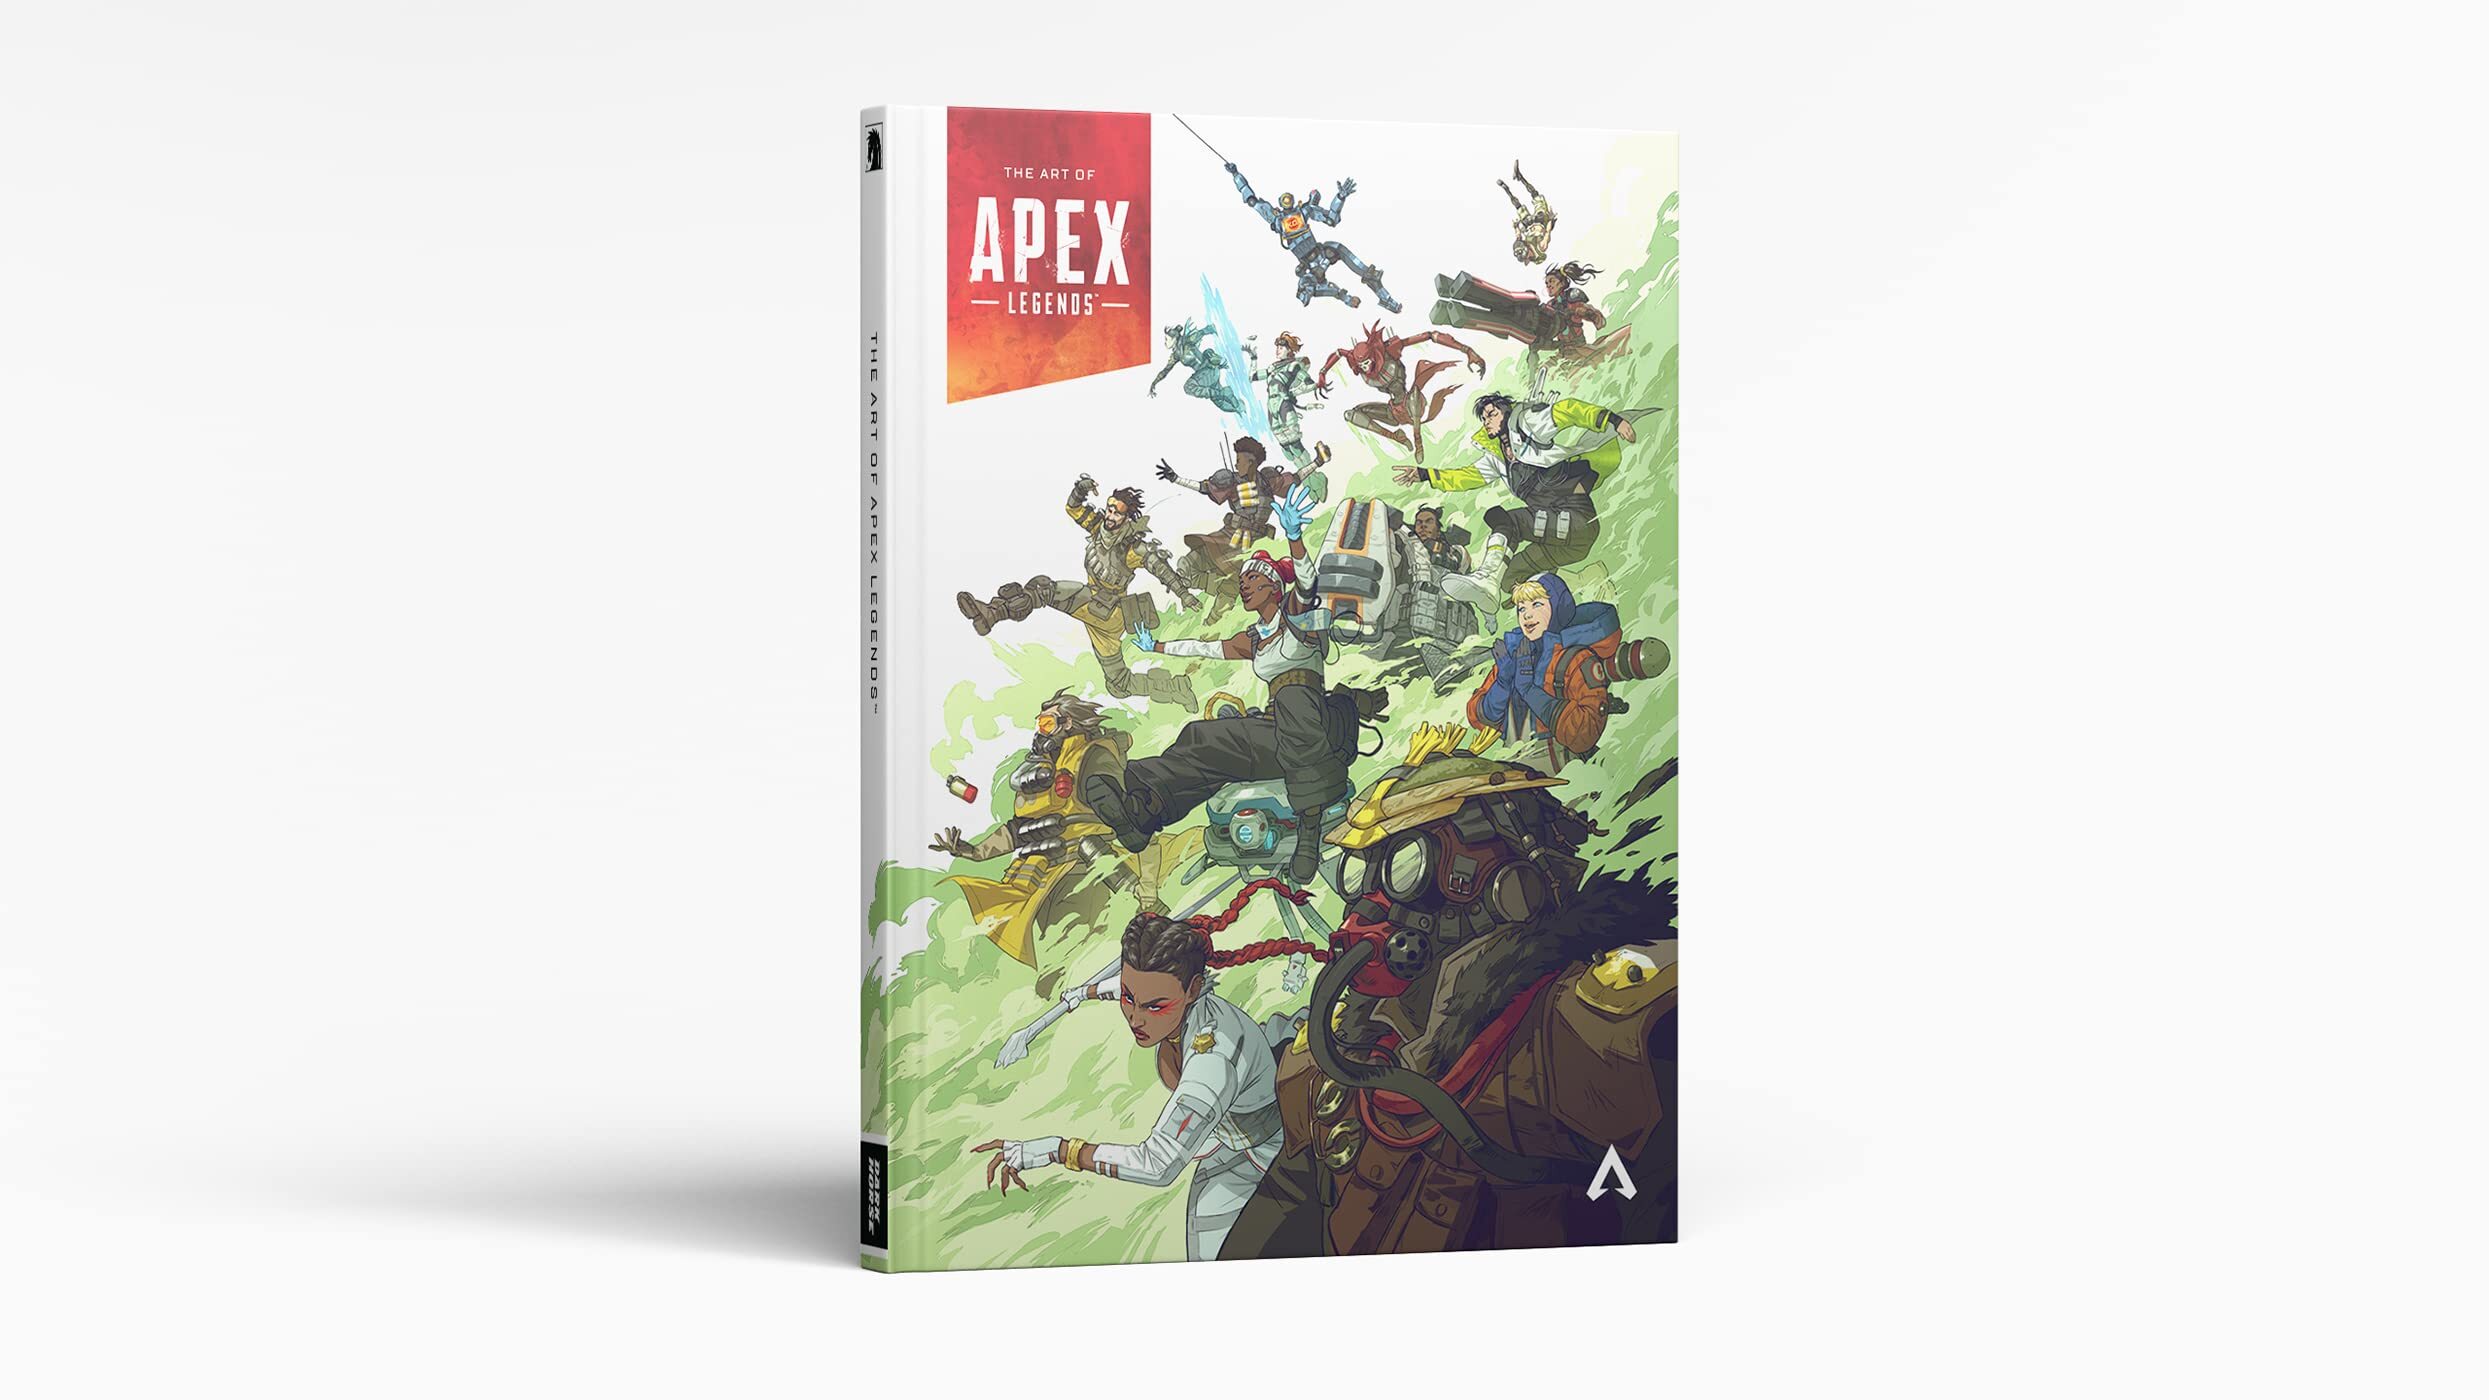 揭秘传奇背后的故事 《Apex英雄》官方设定集今日发售